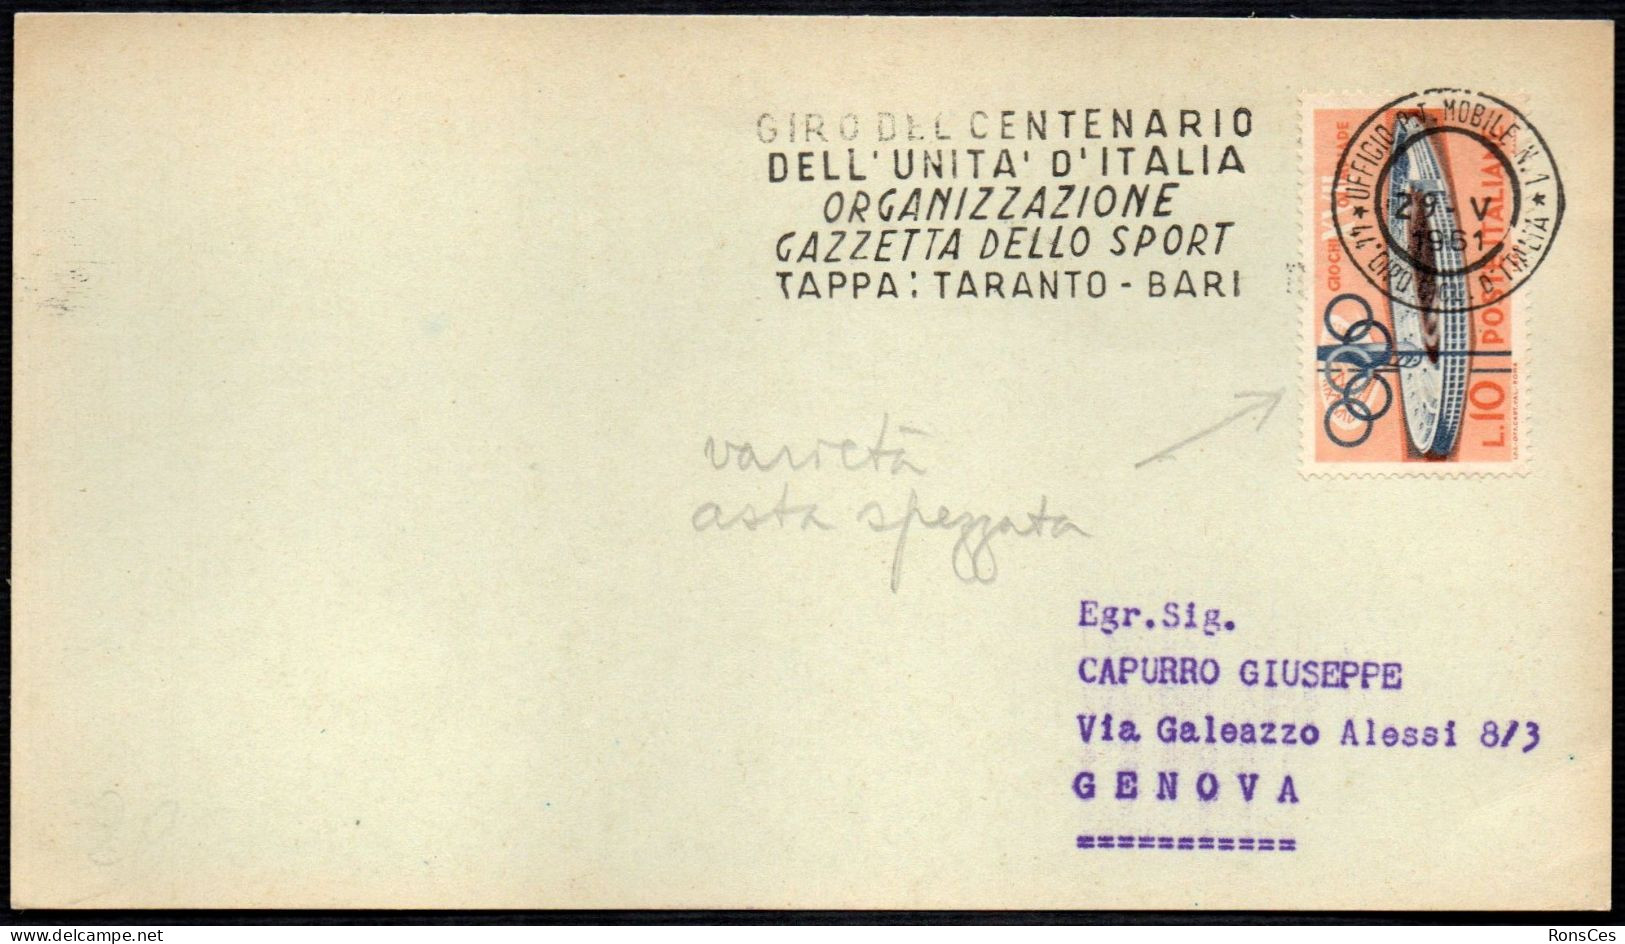 CYCLING - ITALIA 29.05.1961 GIRO DEL CENTENARIO DELL'UNITA' D'ITALIA - GAZZETTA SPORT - TARANTO / BARI - VARIETA' - A - Ciclismo